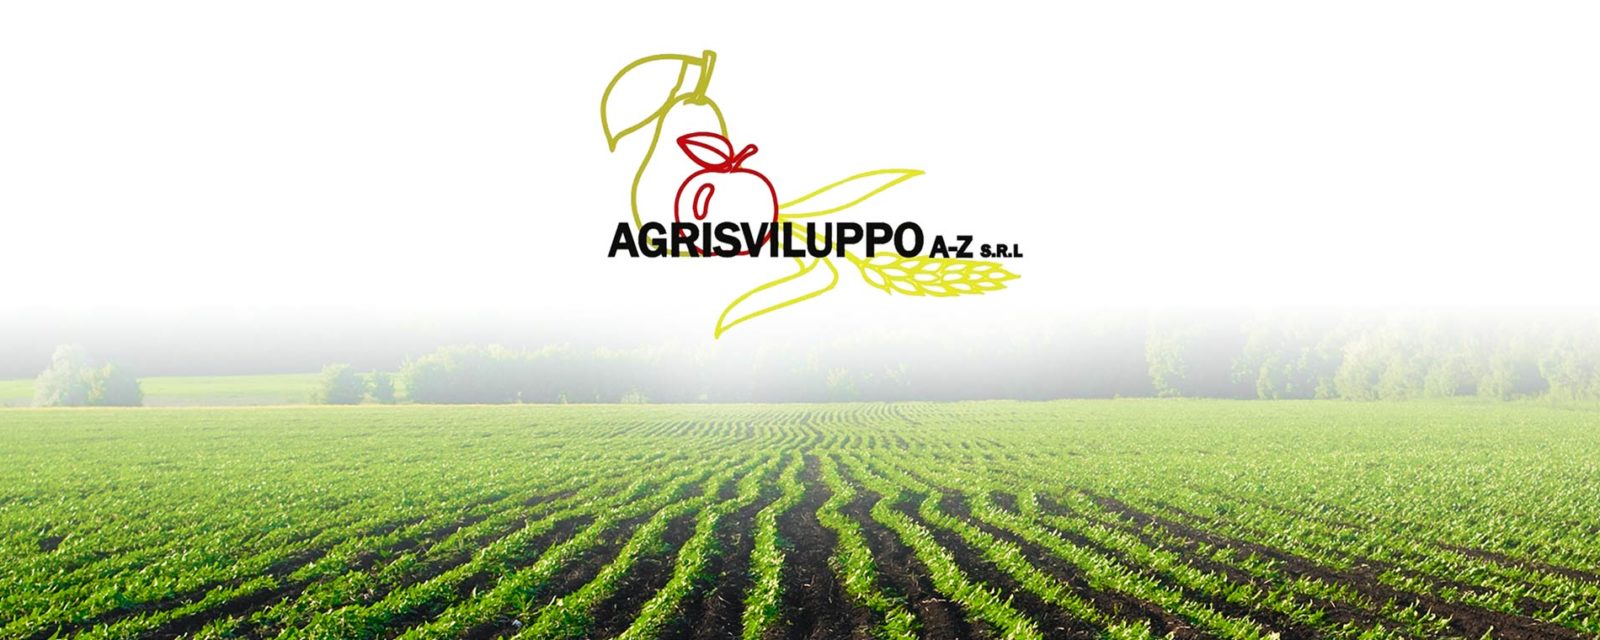 agrisviluppo-banner1